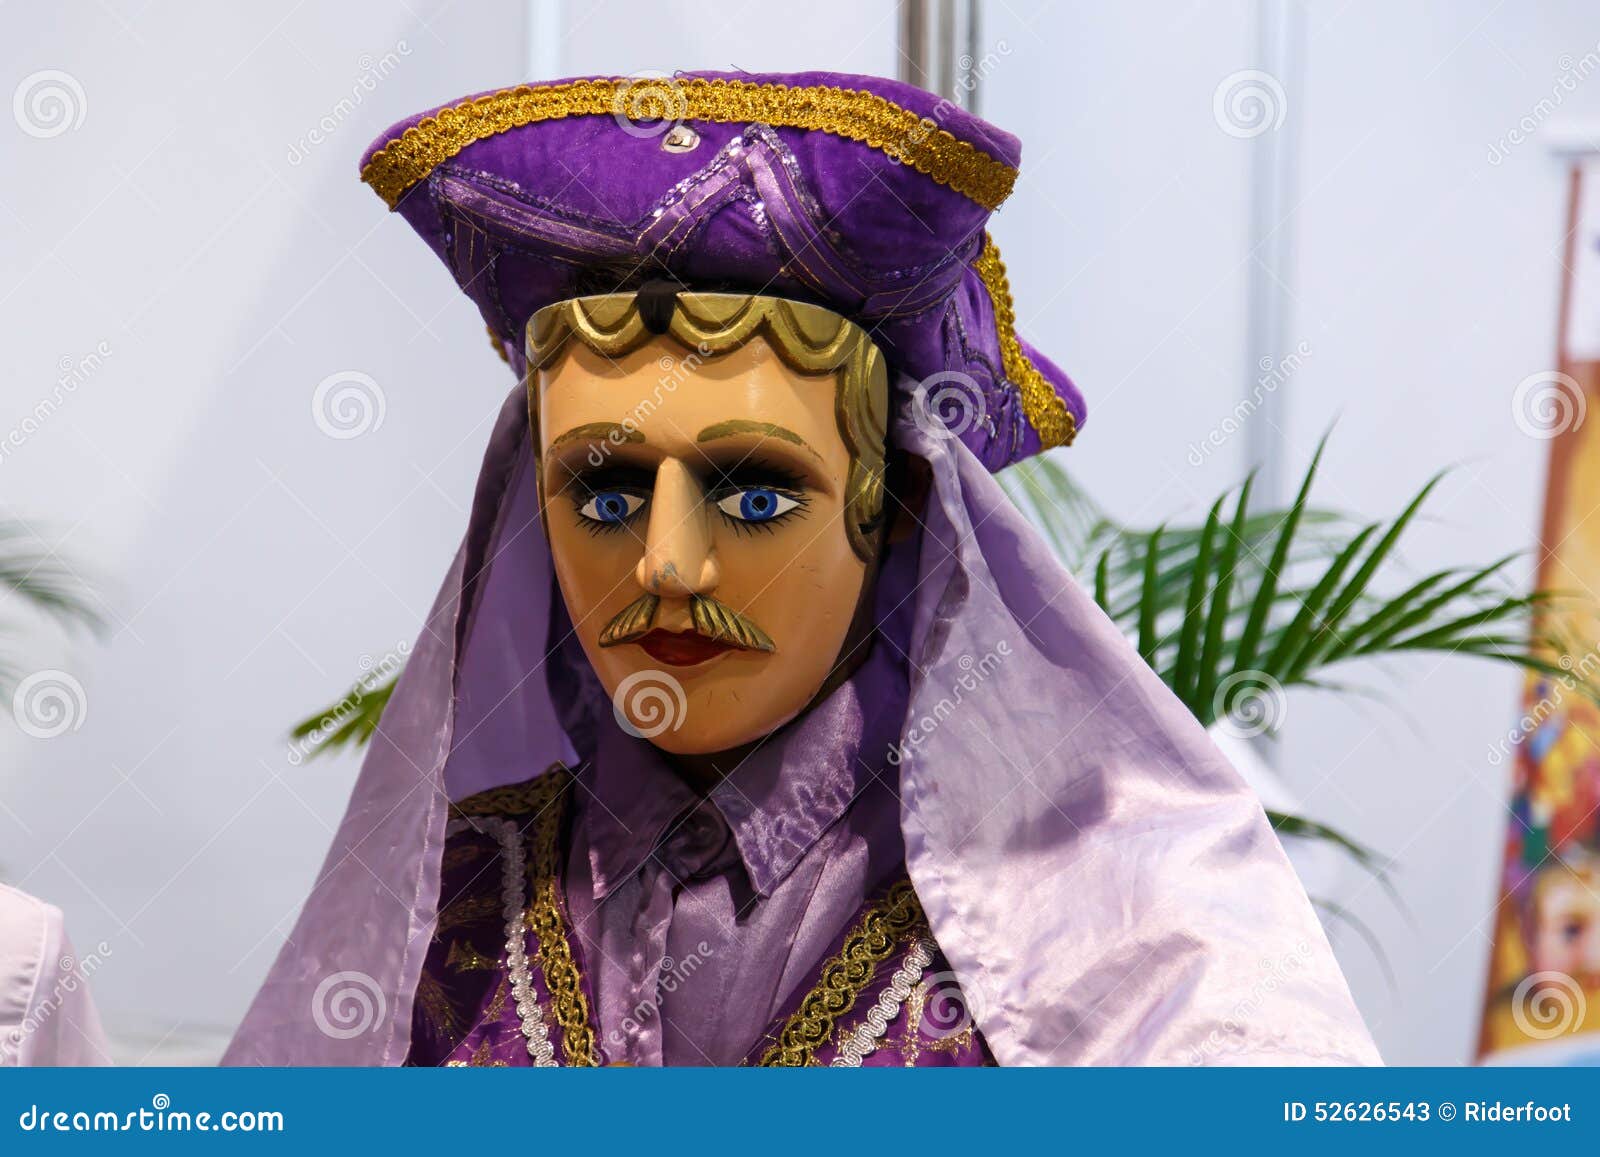 el gueguense, nicaraguan folklore mask